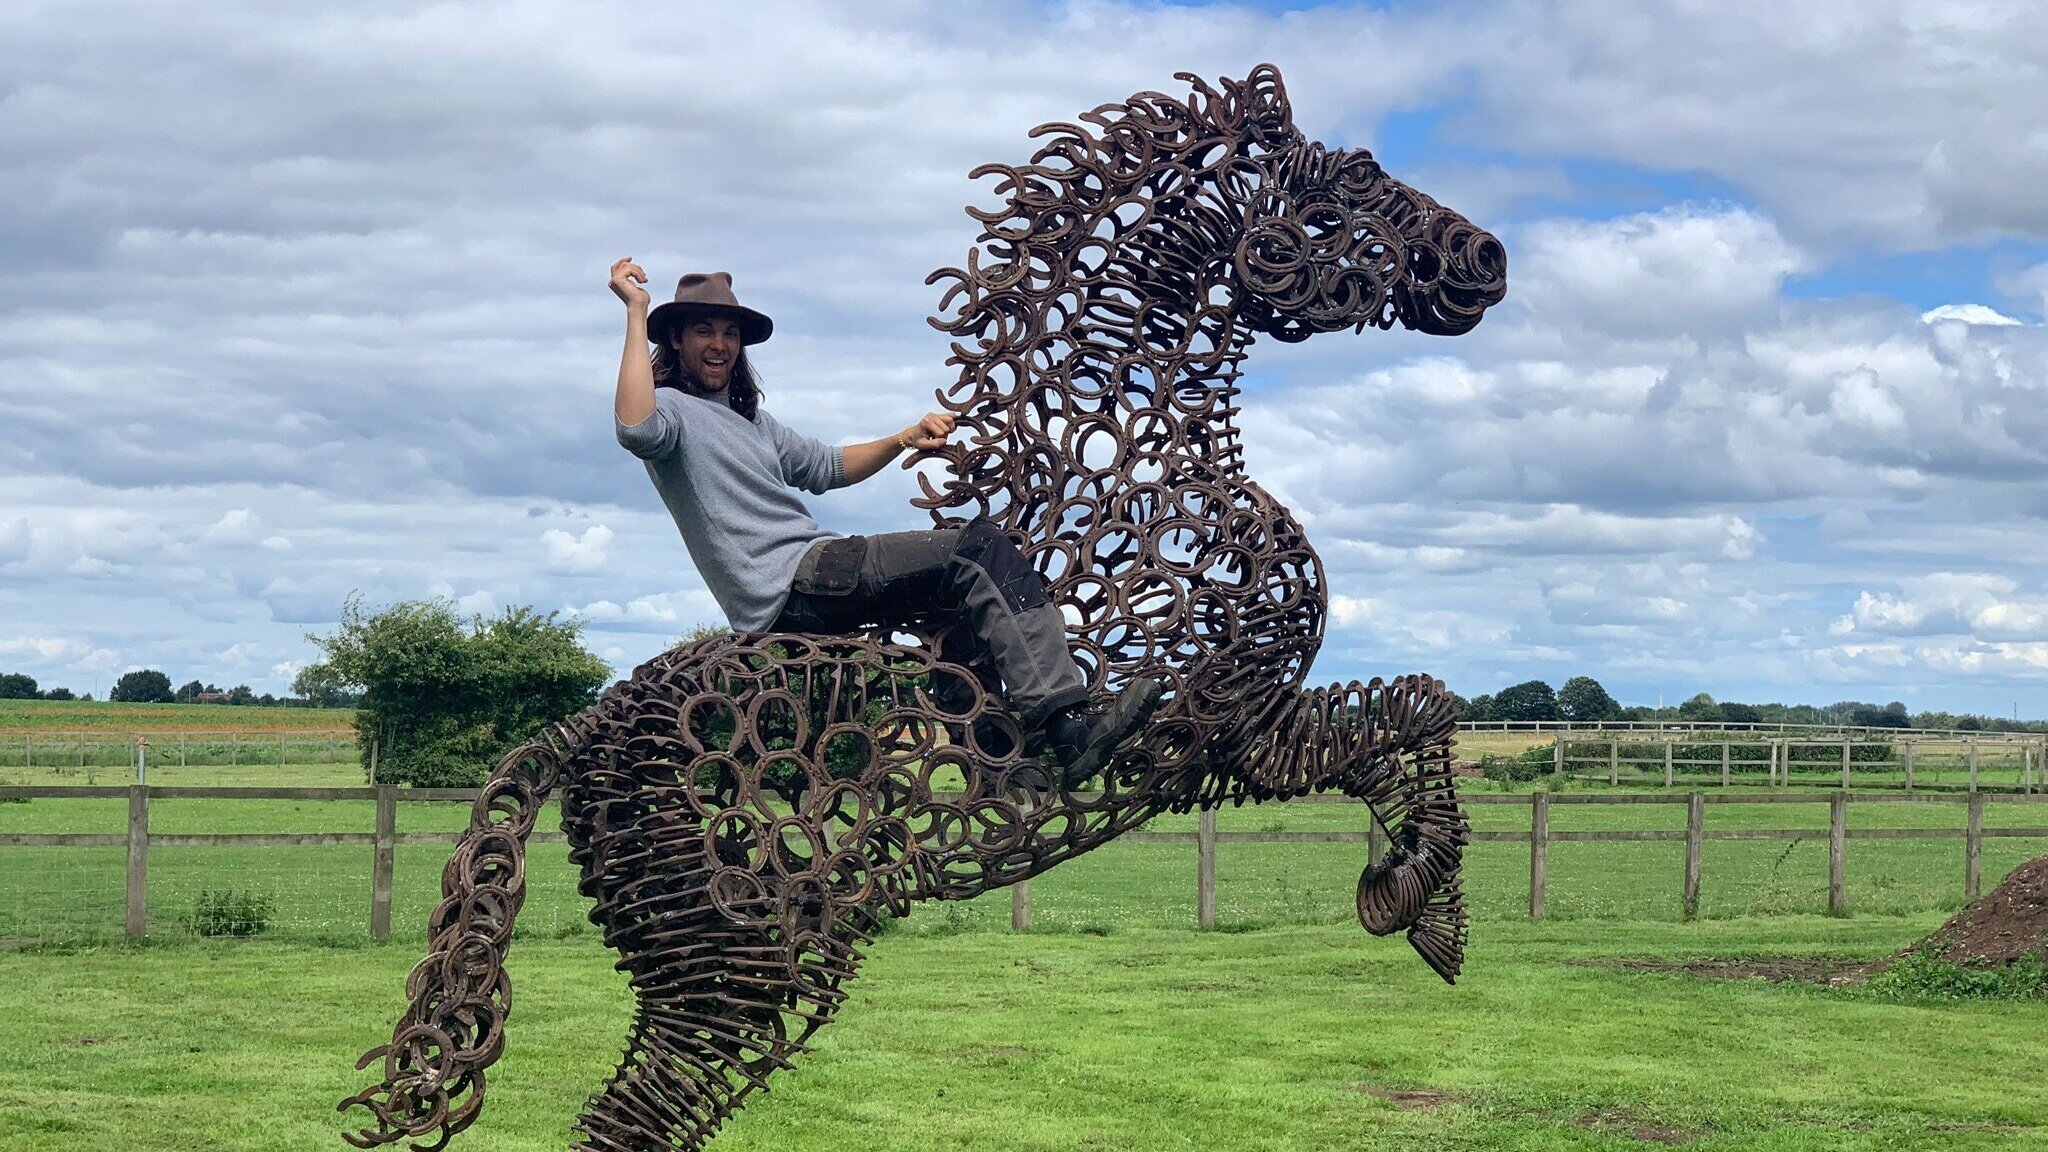 Man riding horse sculpture